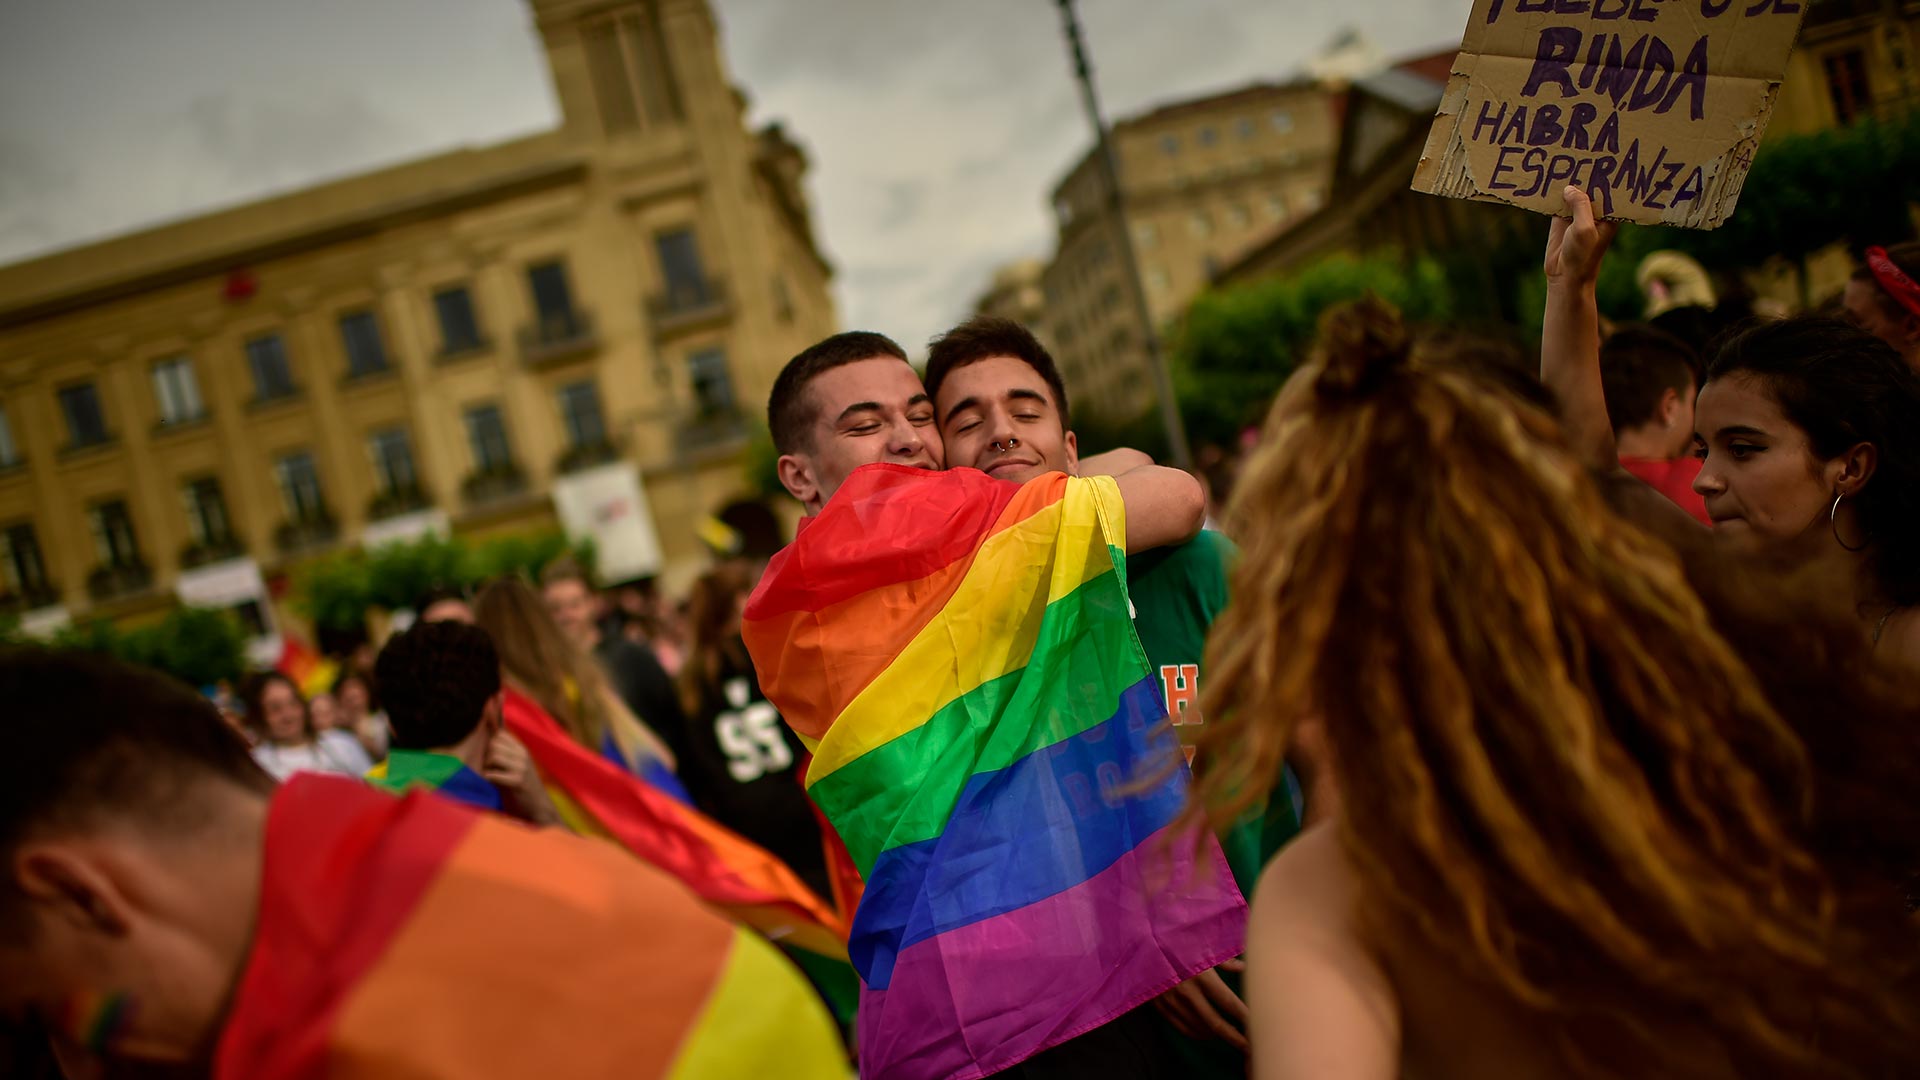 Barcelona registra 35 agresiones LGTBI desde enero, un 50% más que en 2018